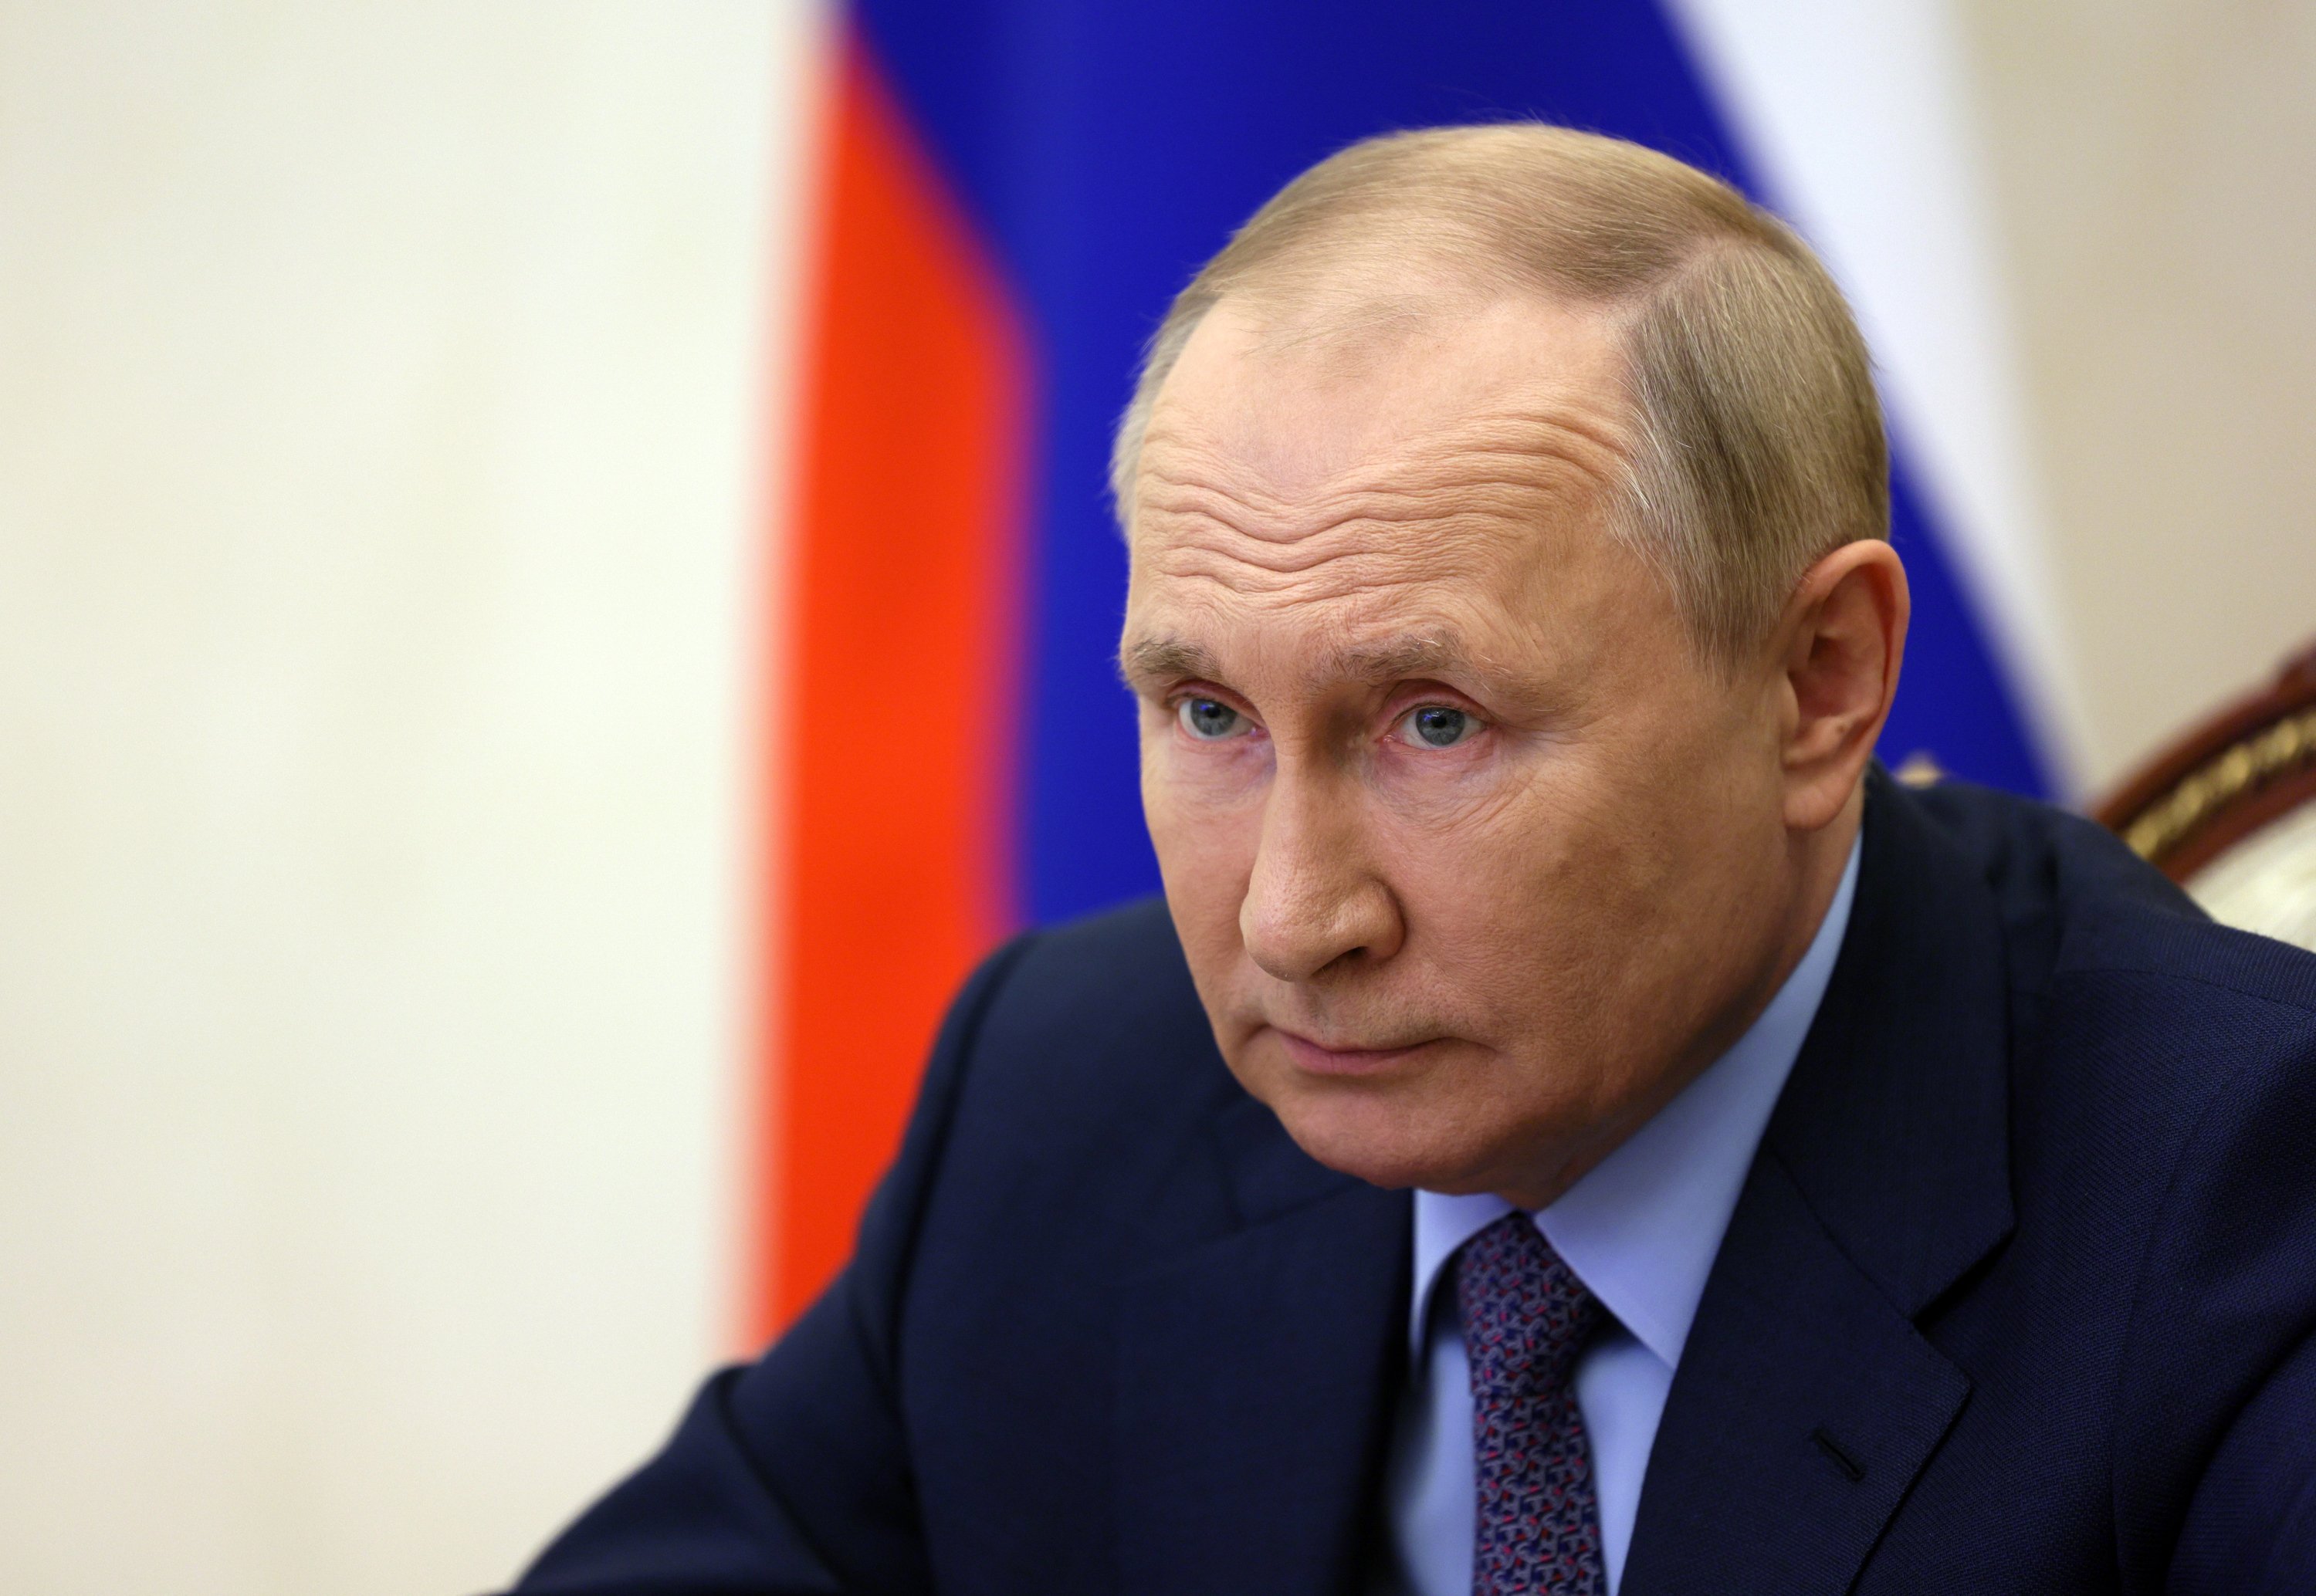 Portades entusiastes amb les desgràcies de Putin a Ucraïna i Moscou